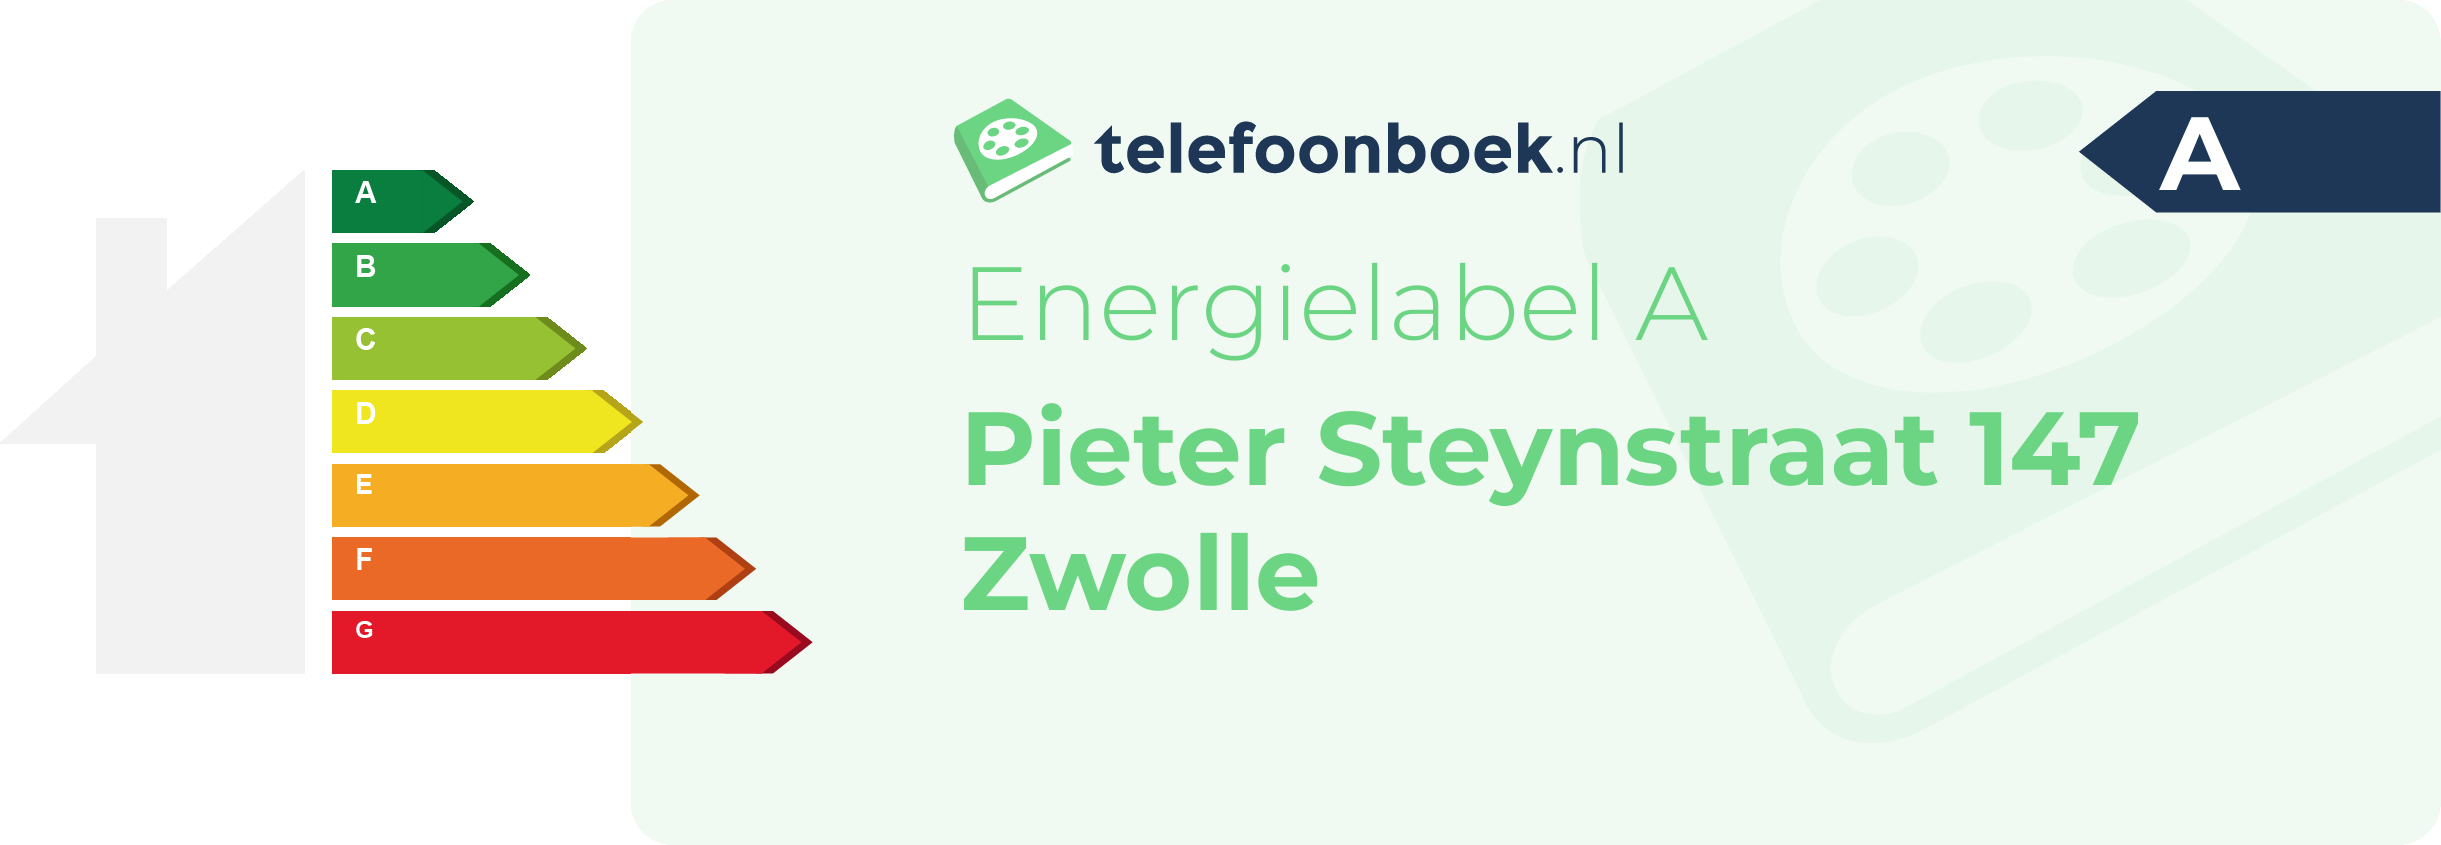 Energielabel Pieter Steynstraat 147 Zwolle